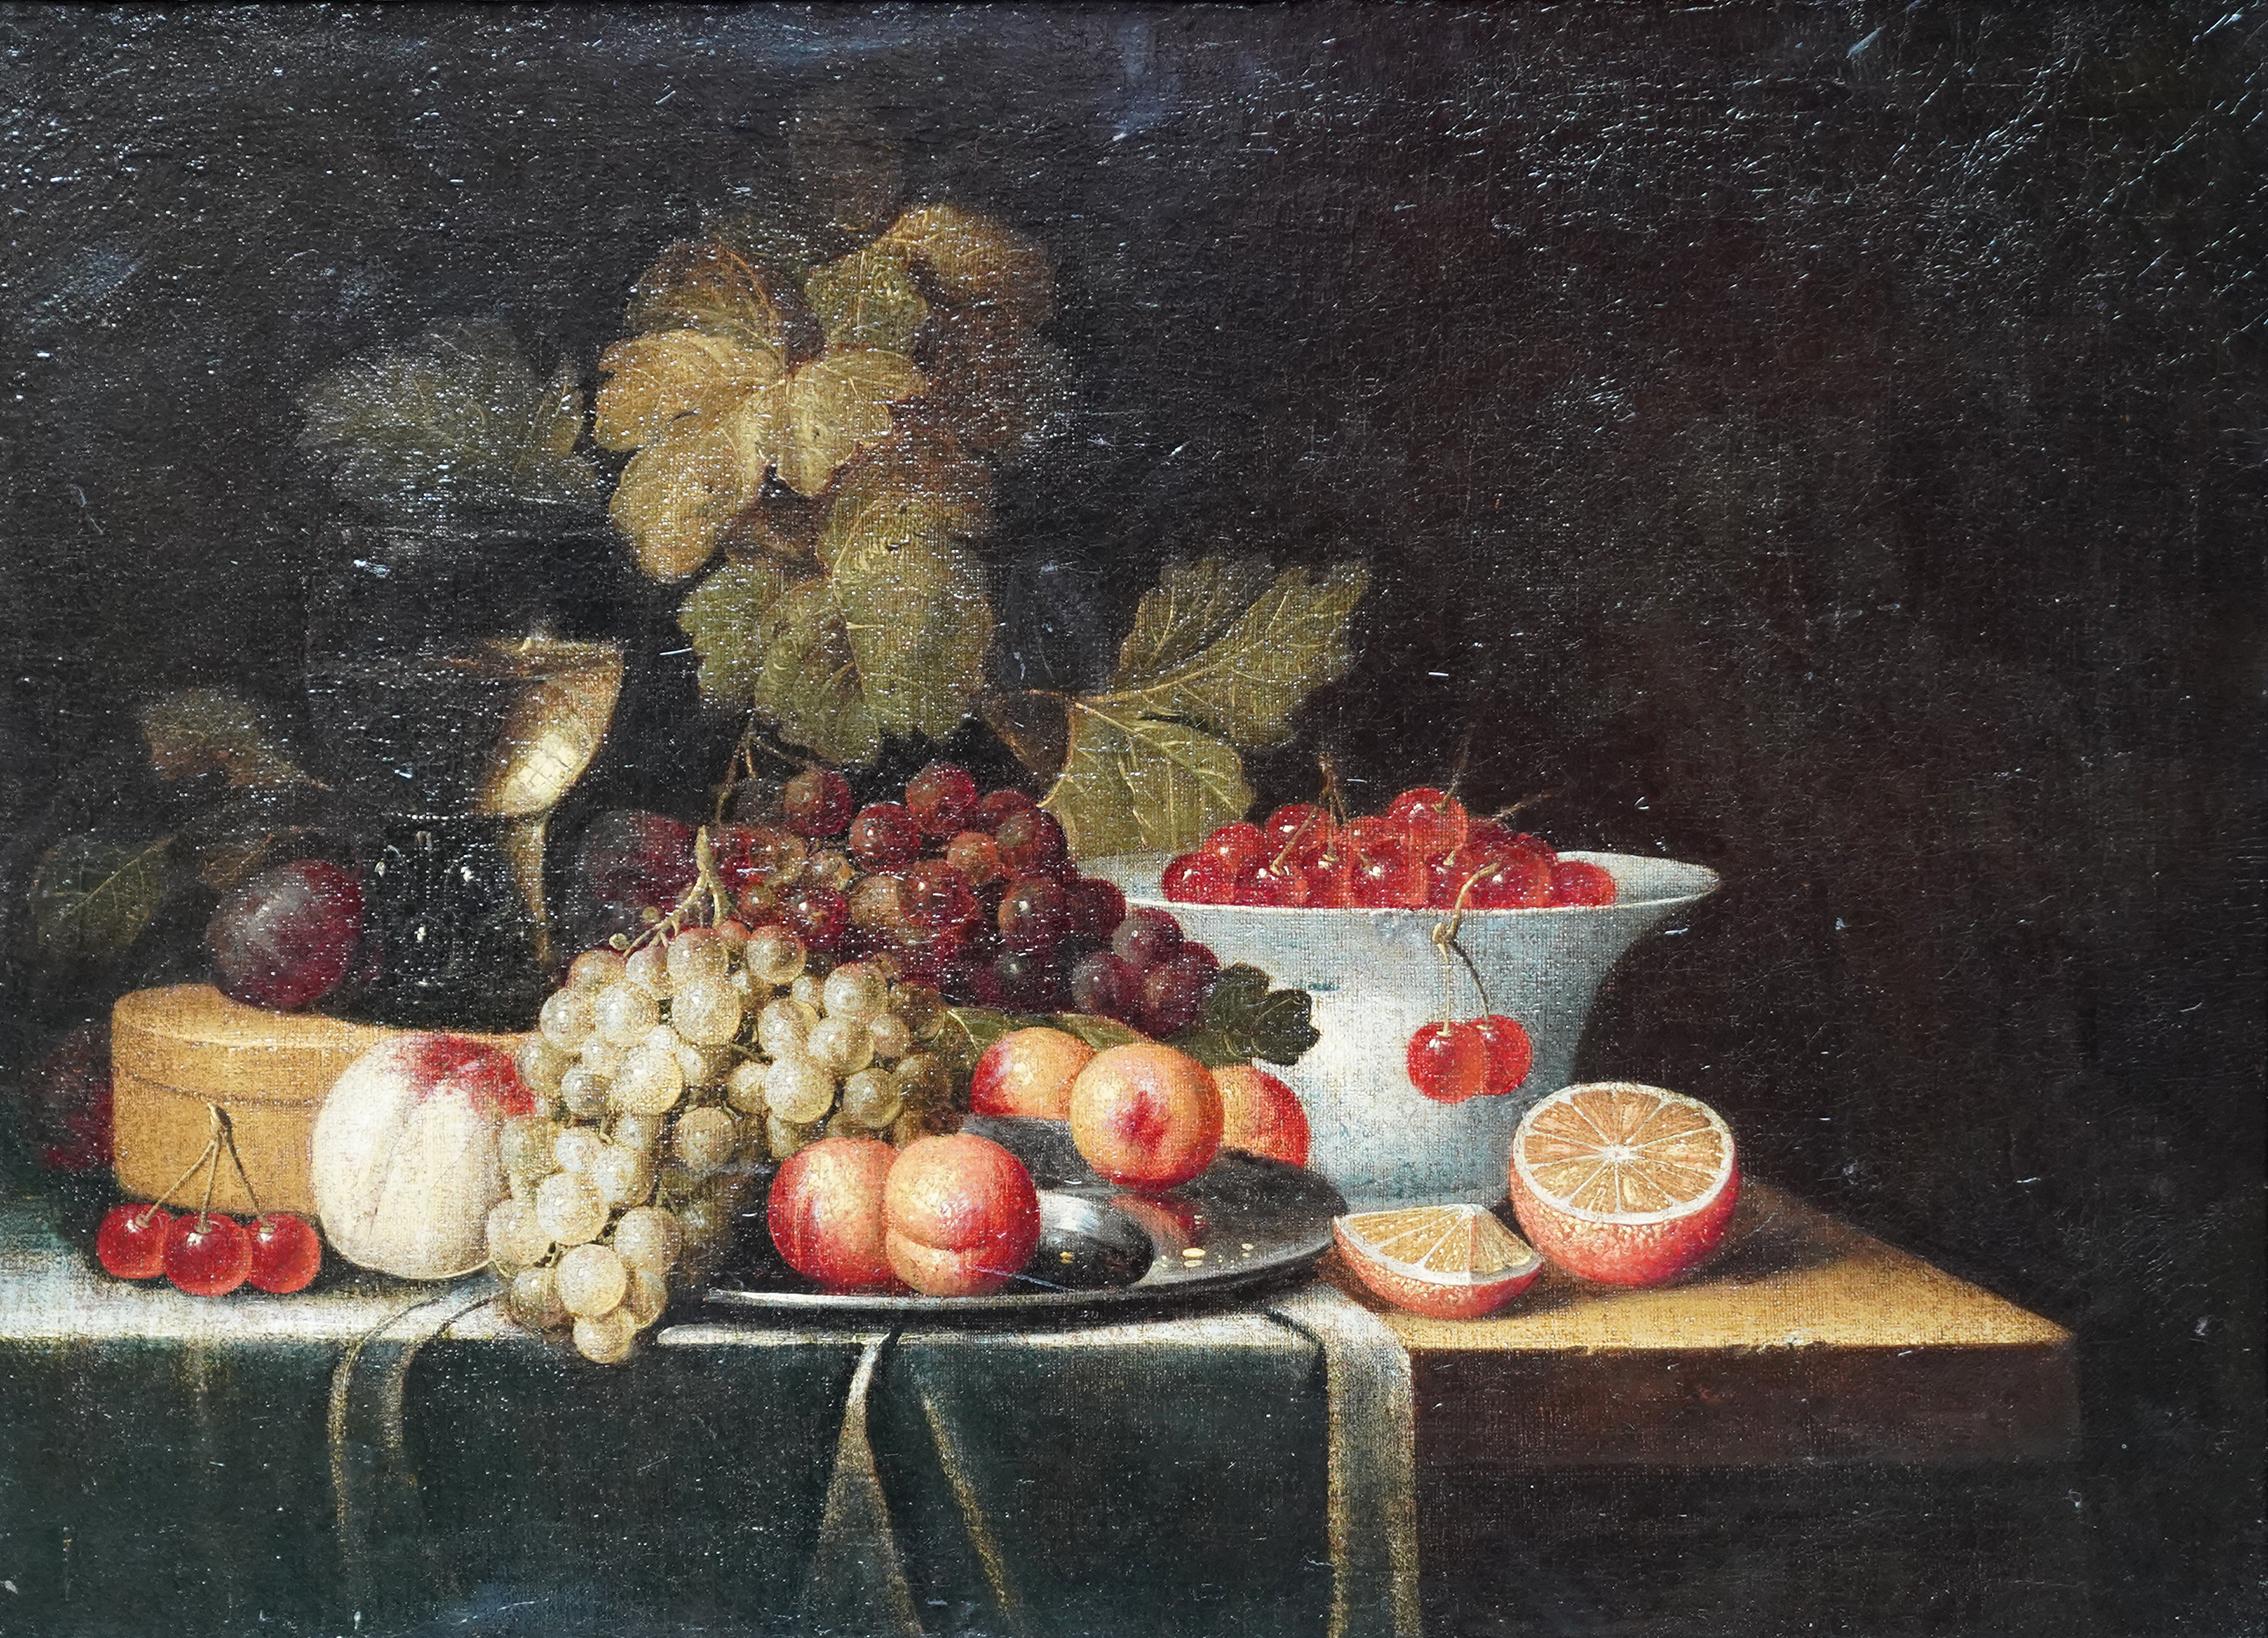 Still Life of Fruit - Dutch 17th century art Old Master still life oil painting - Painting by Jan Davidsz De Heem